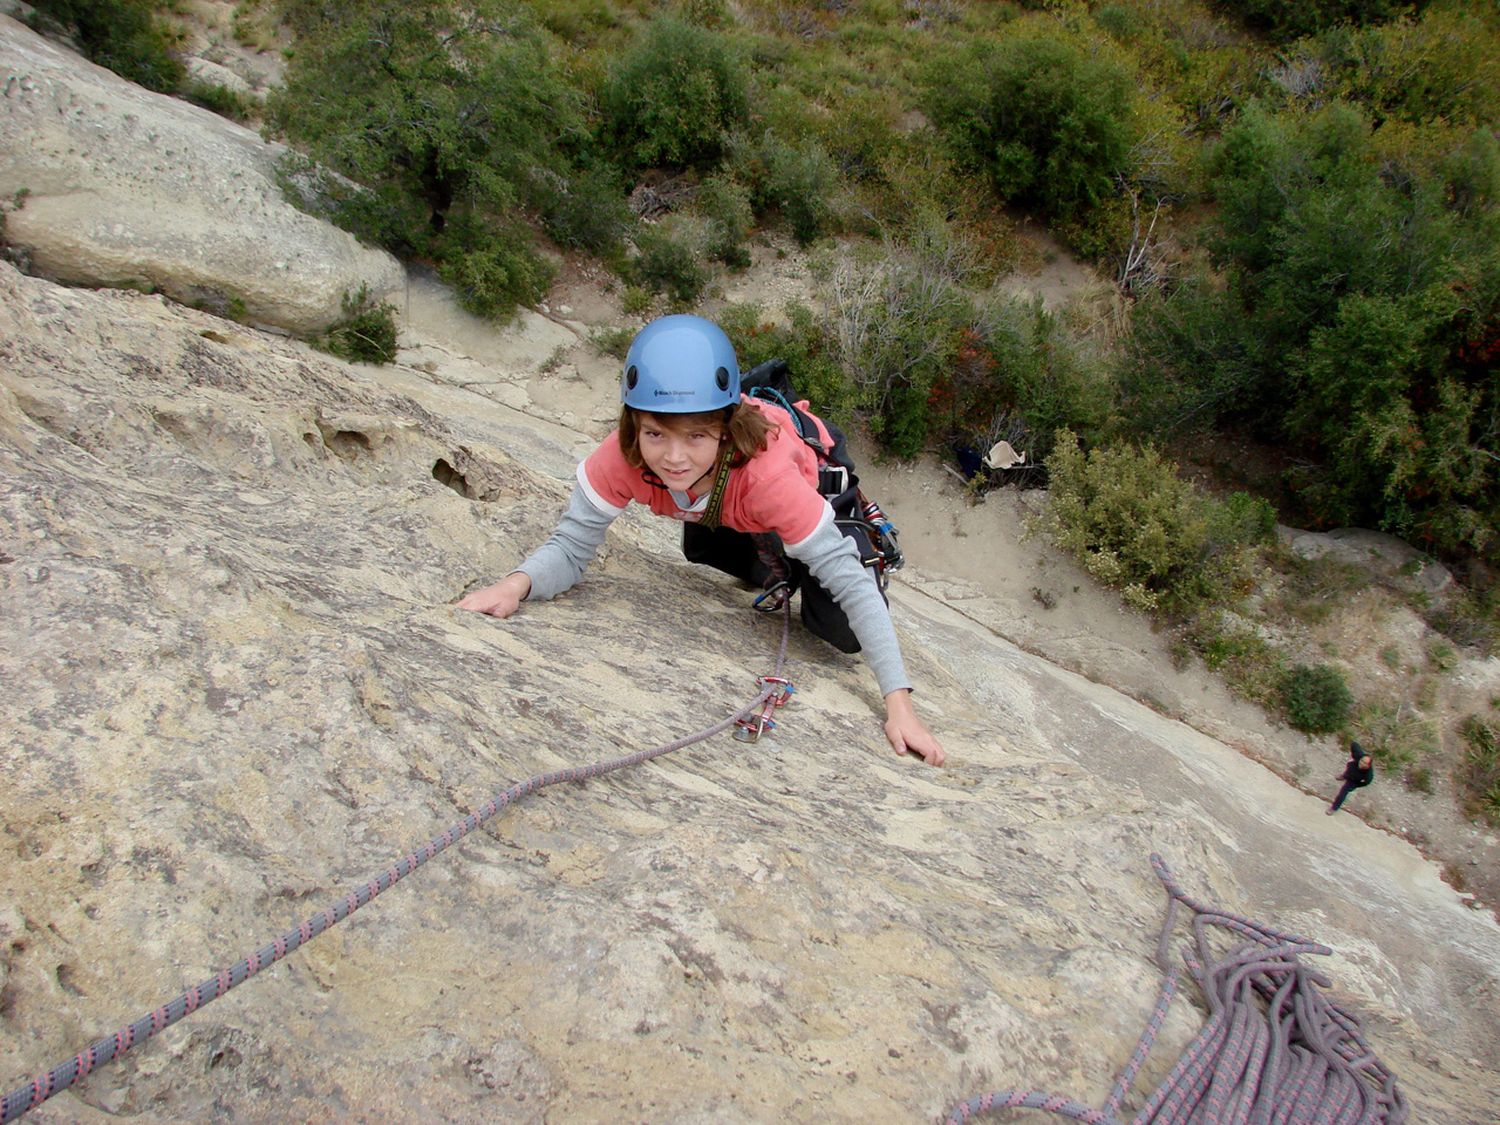 Rock Climbing Tours near Santiago de Chile with Chile Montaña_09.jpg